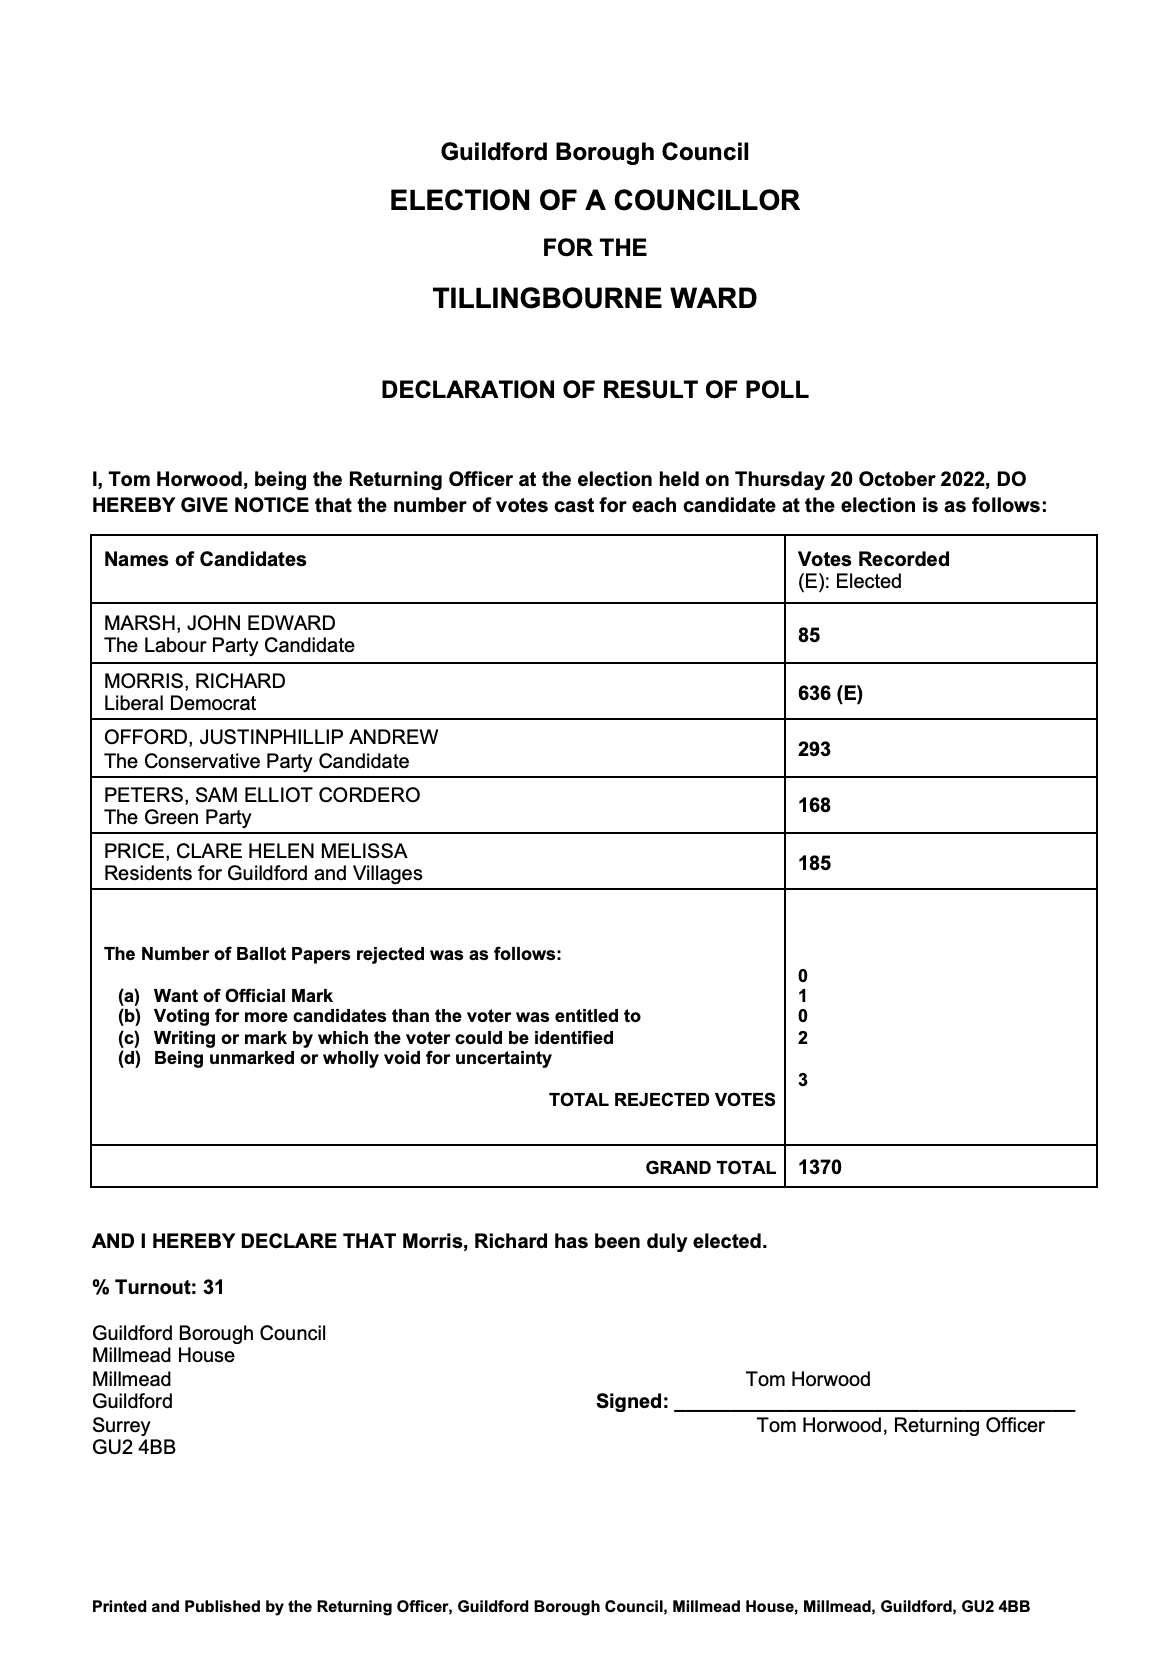 Image of Declaration of Result - Tillingbourne_Oct_22